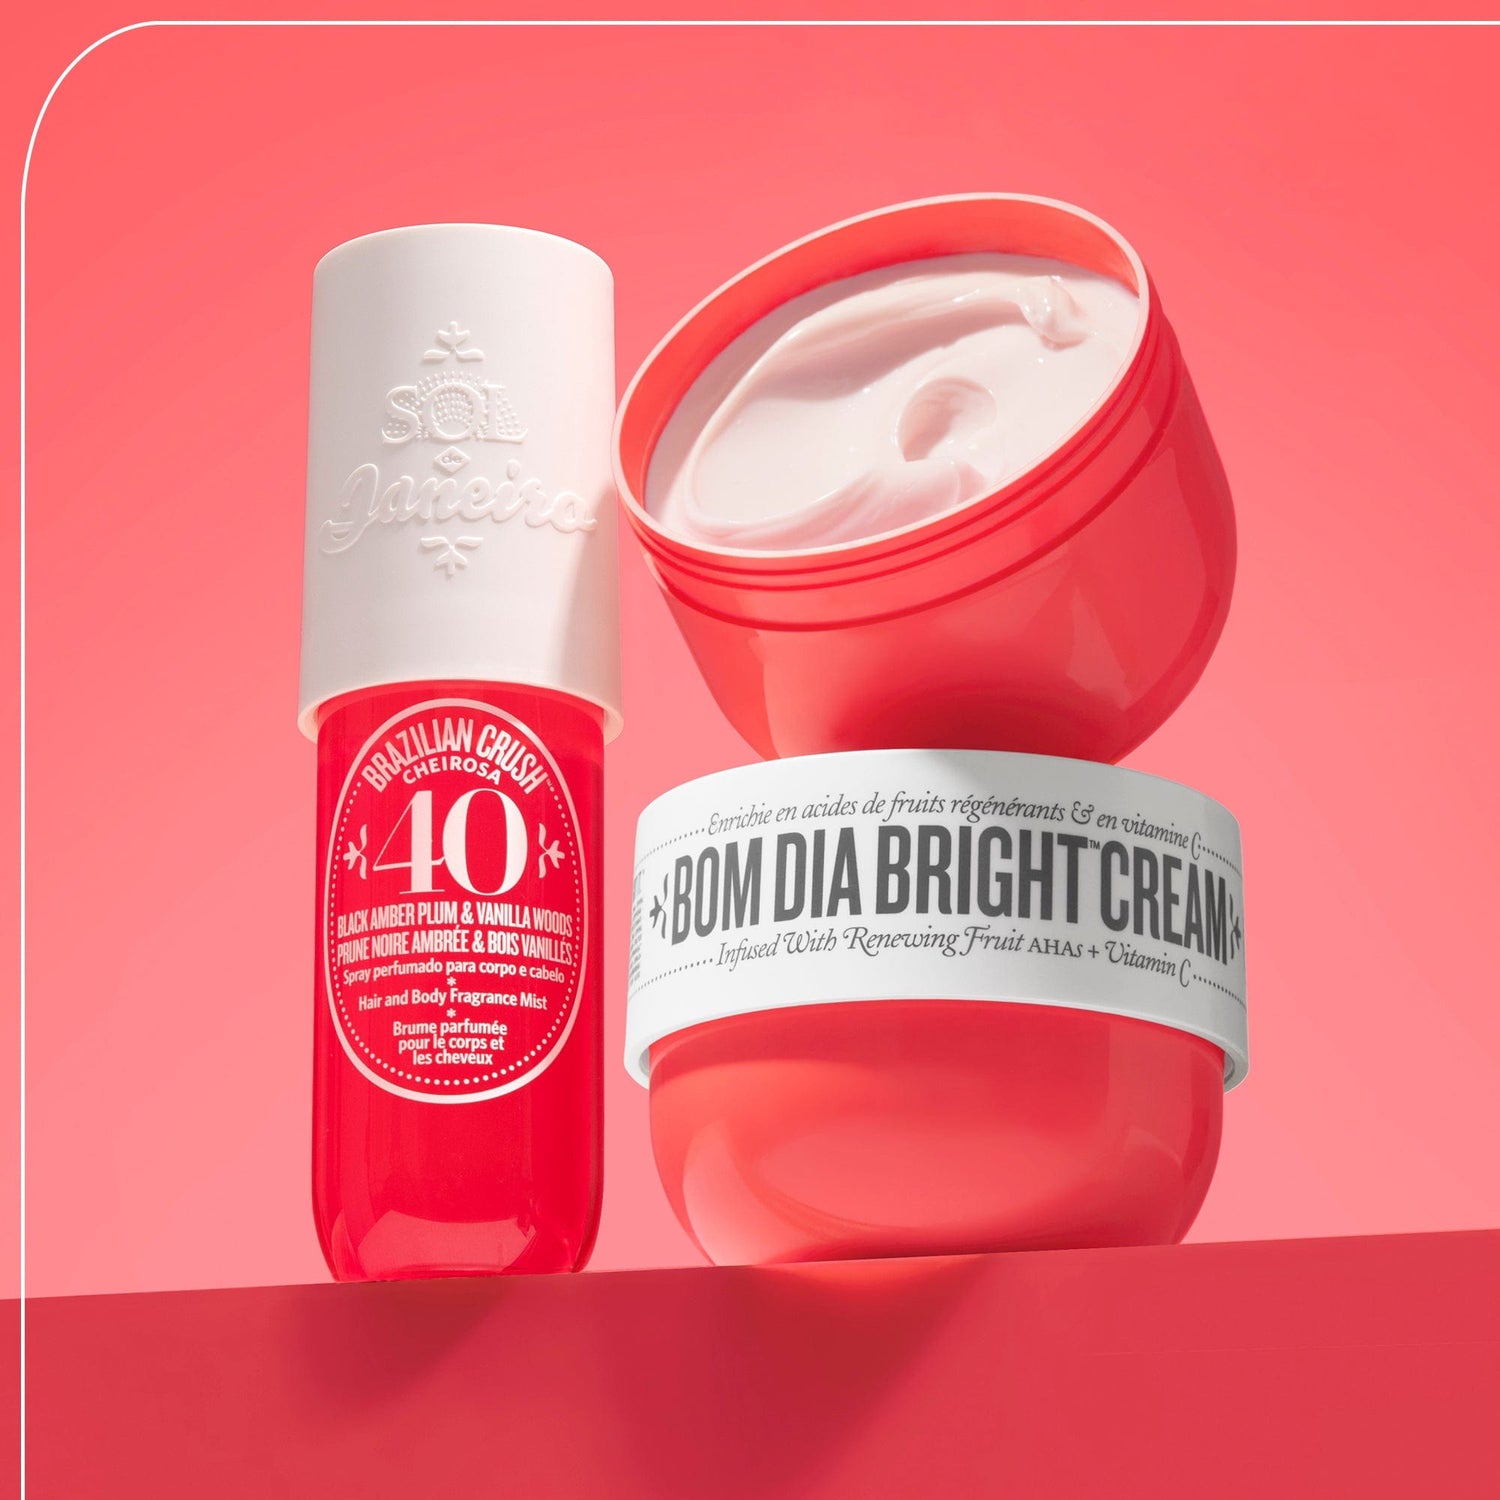 Brazilian Crush Cheirosa 40 Bom Dia Bright™ Perfume Mist and bom dia bright cream | Sol de Janeiro